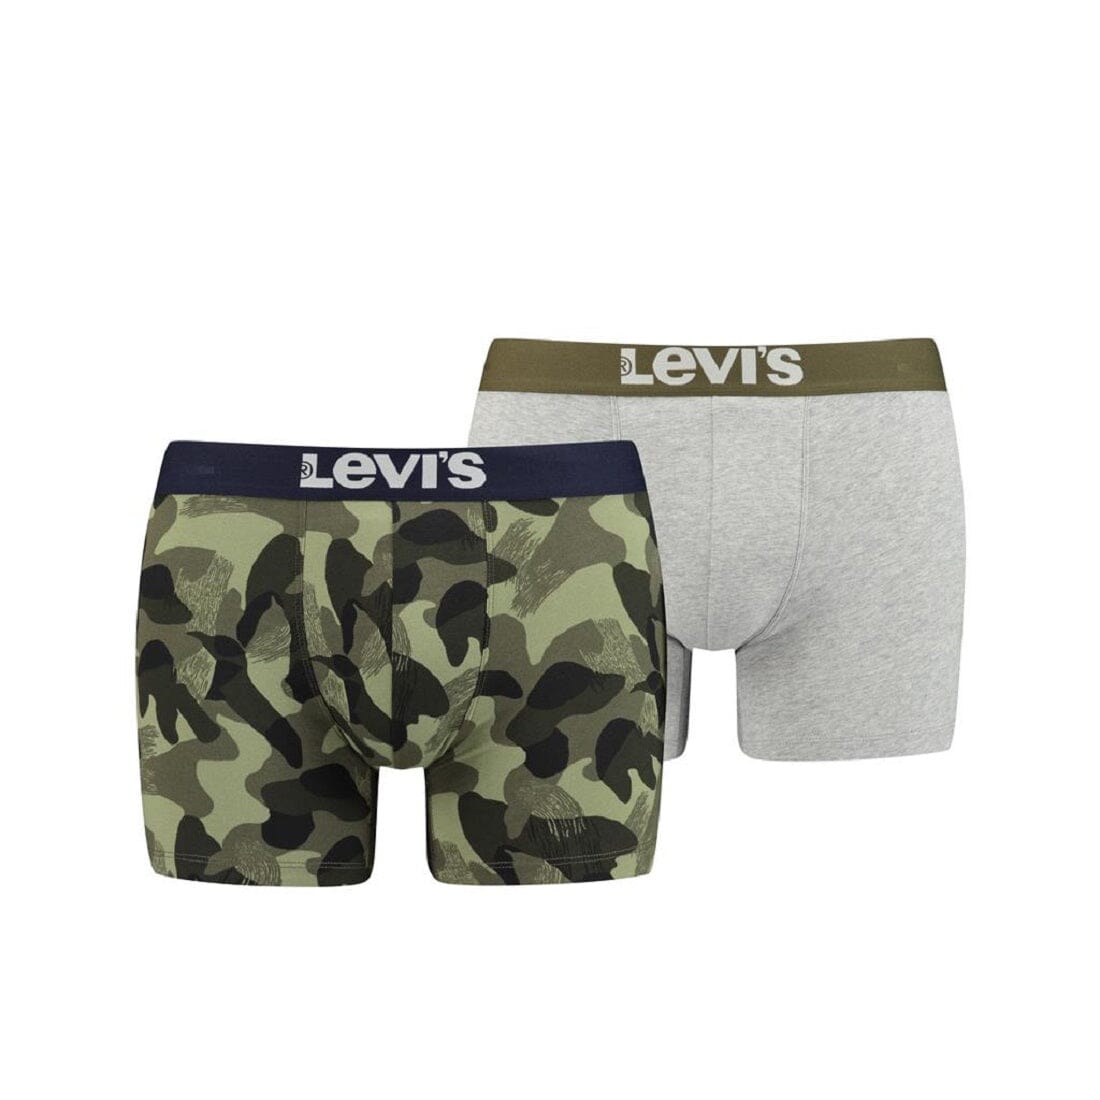 Levi's - Boxer 2-pack - Khaki/Camouflage Boxershort Levis 